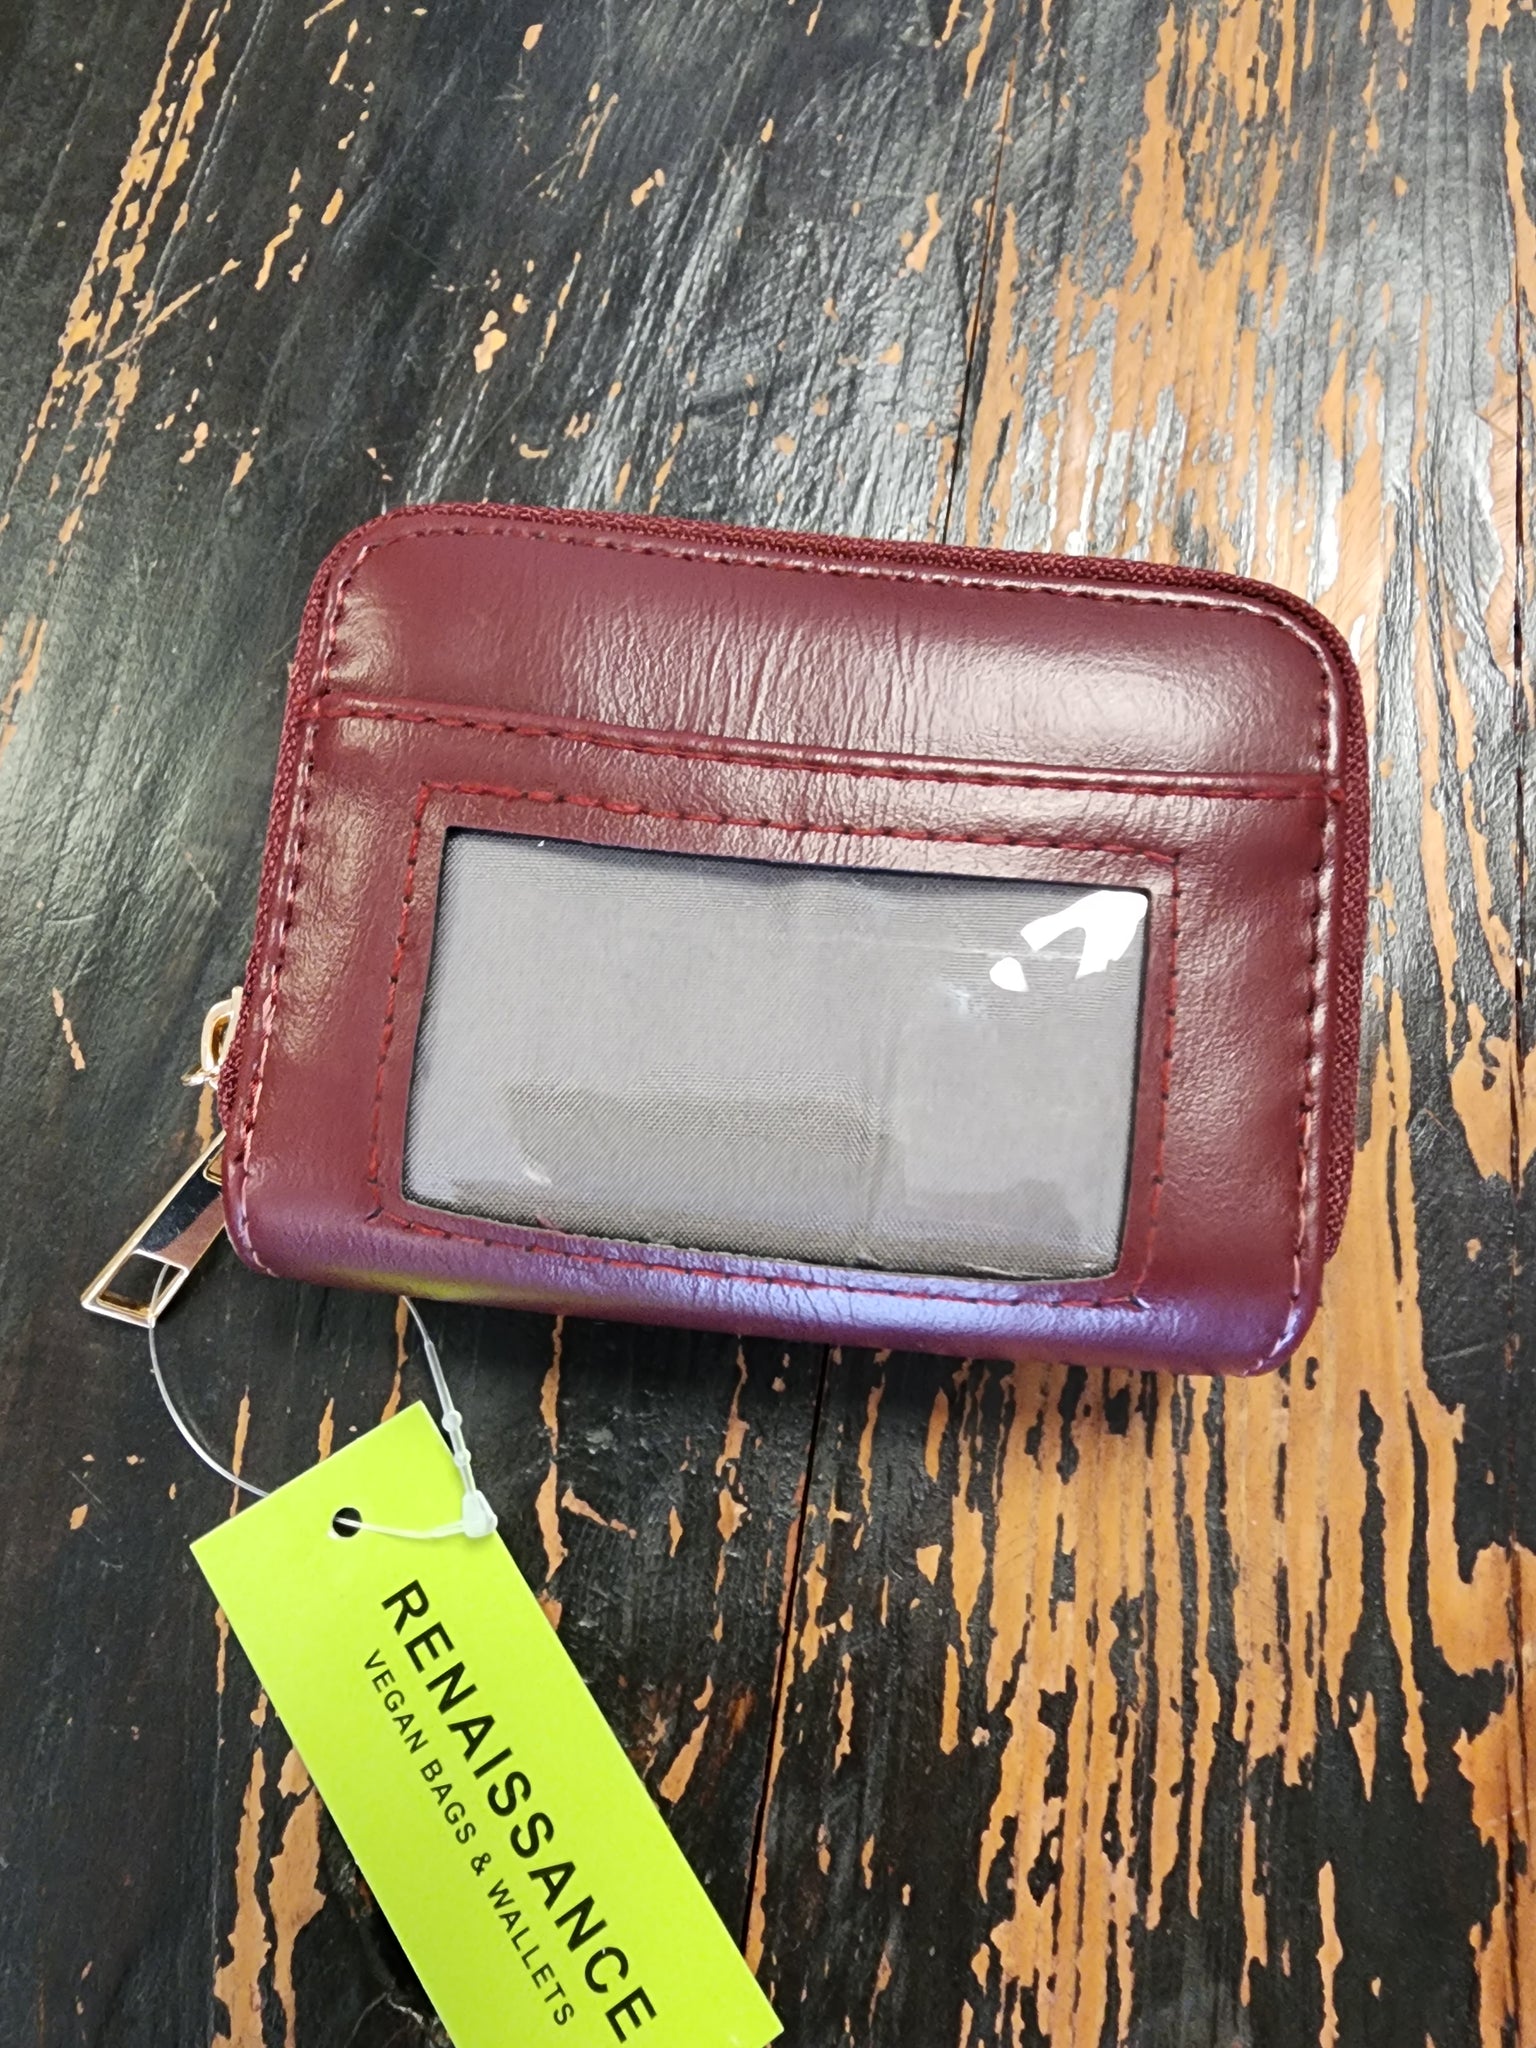 Acordian double zip small wallet